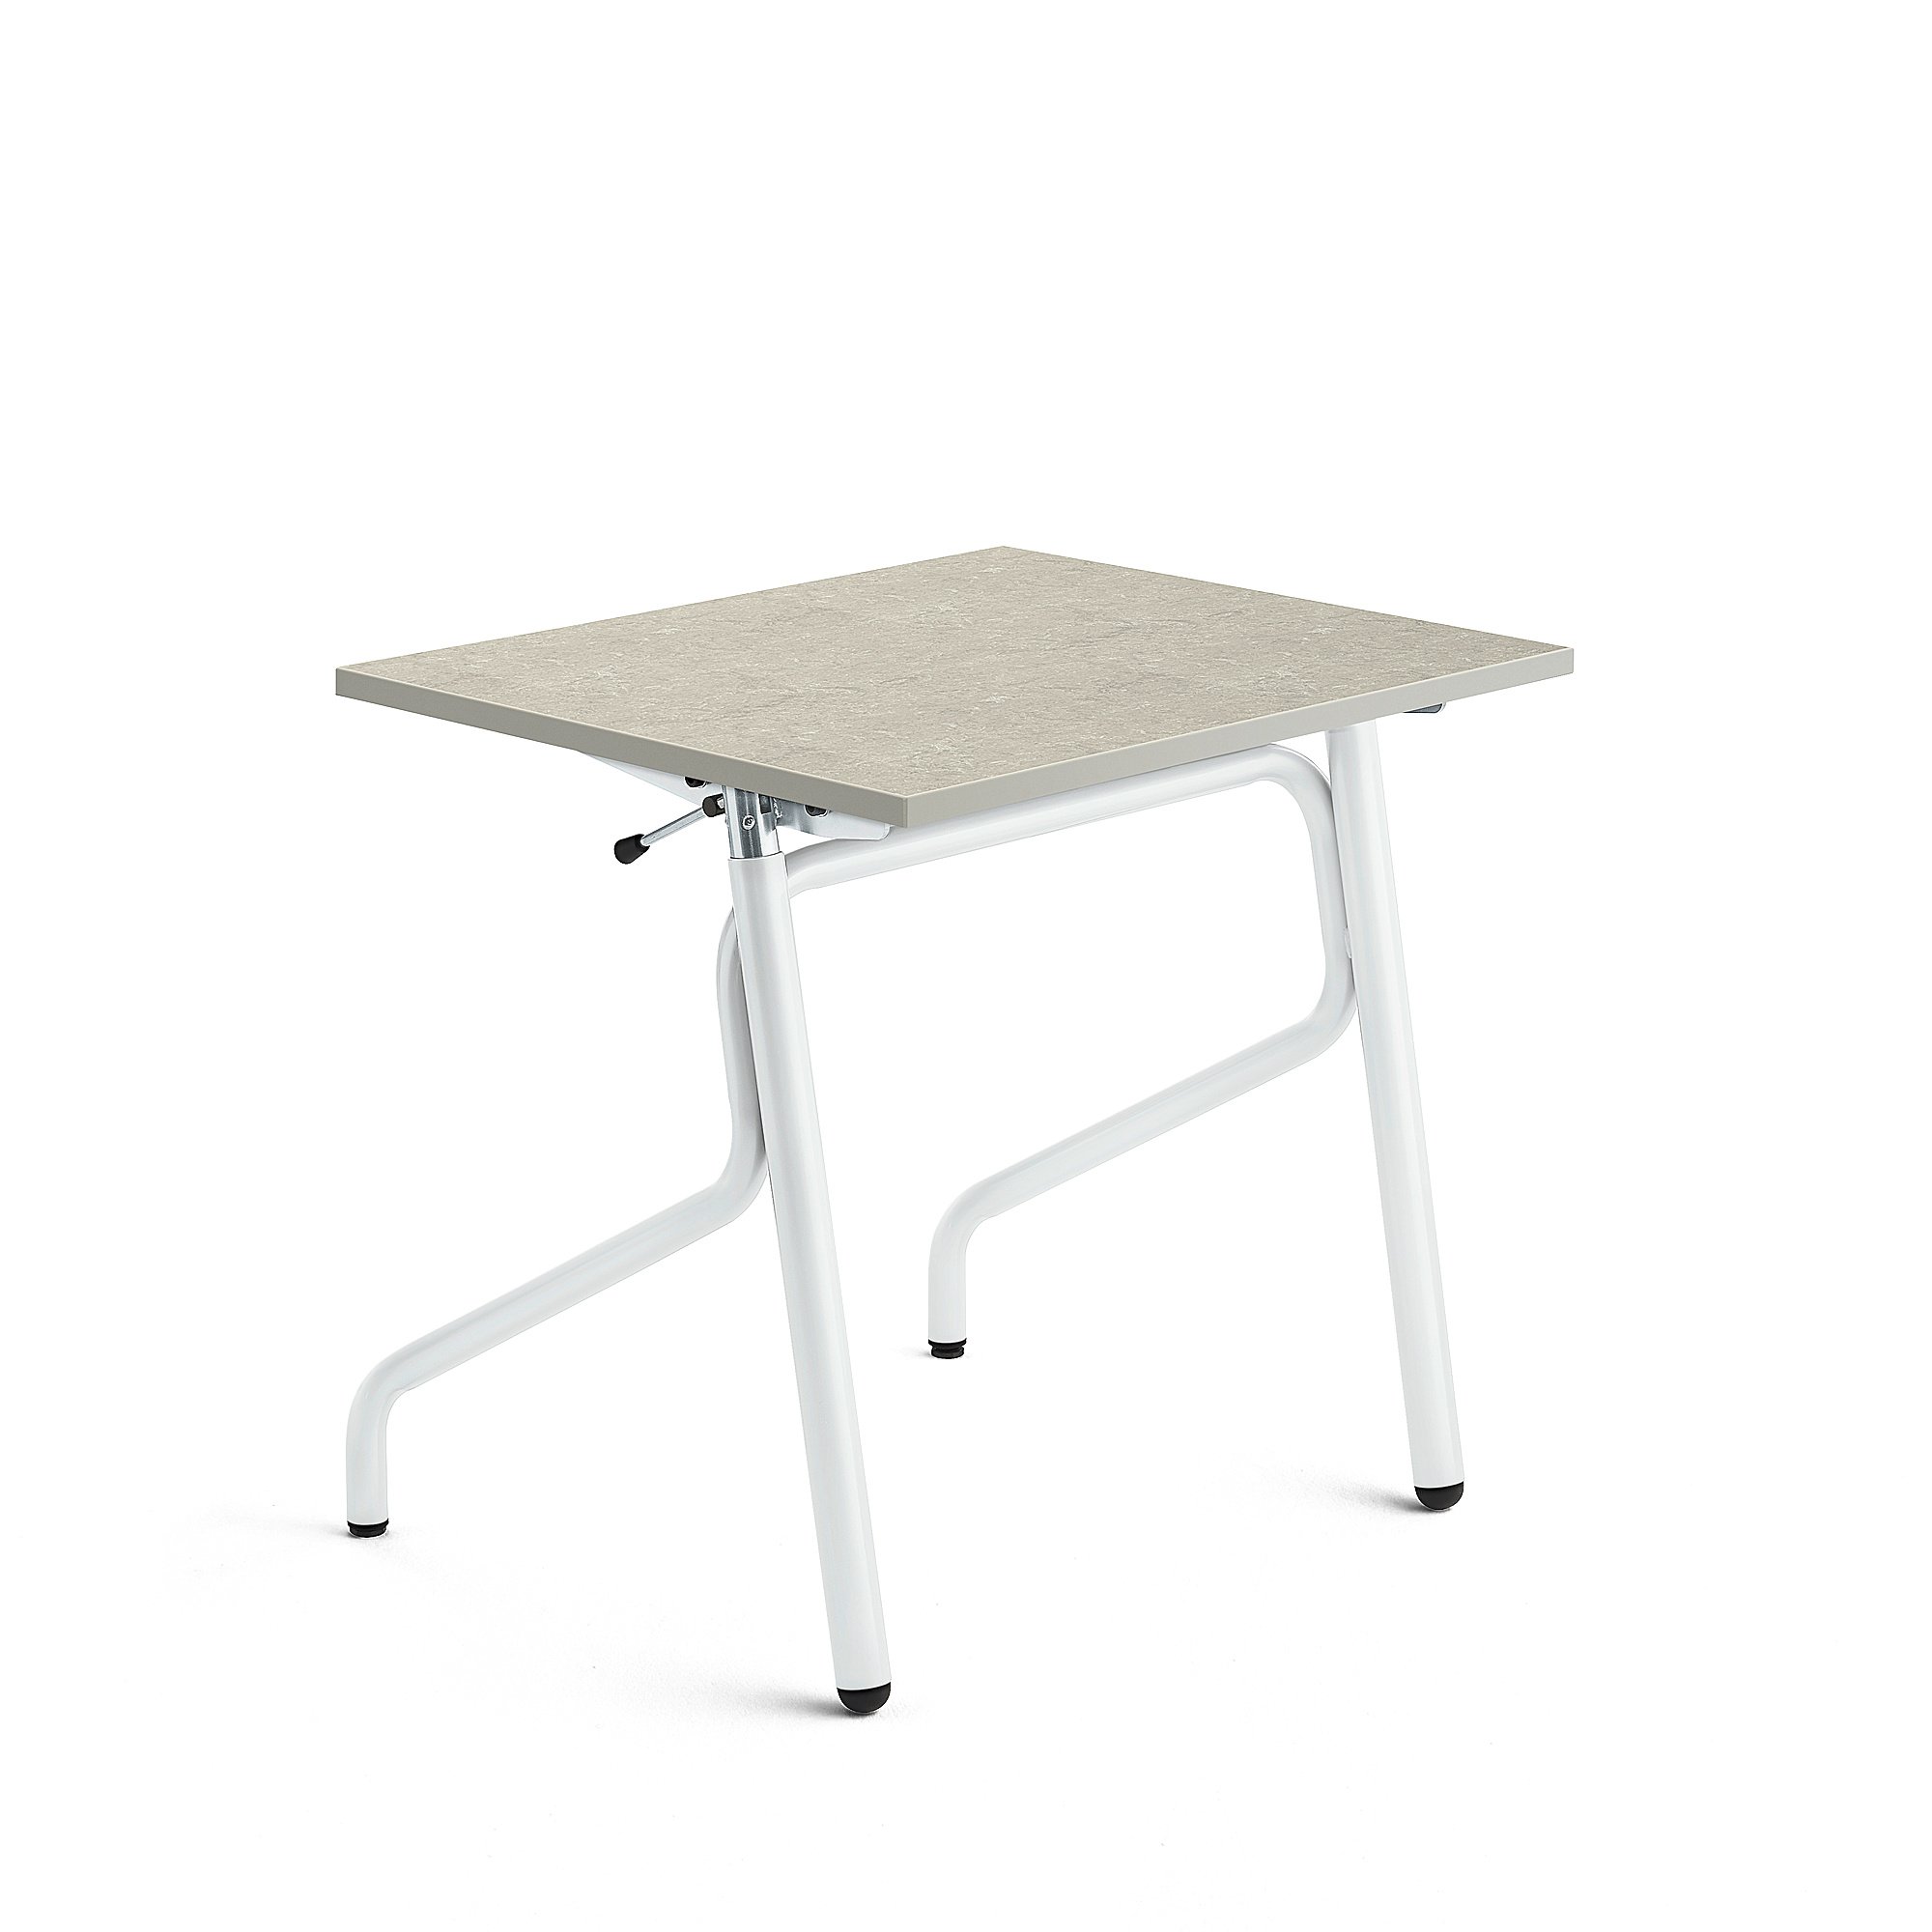 Školní lavice ADJUST, výškově nastavitelná, 700x600 mm, linoleum, šedá, bílá